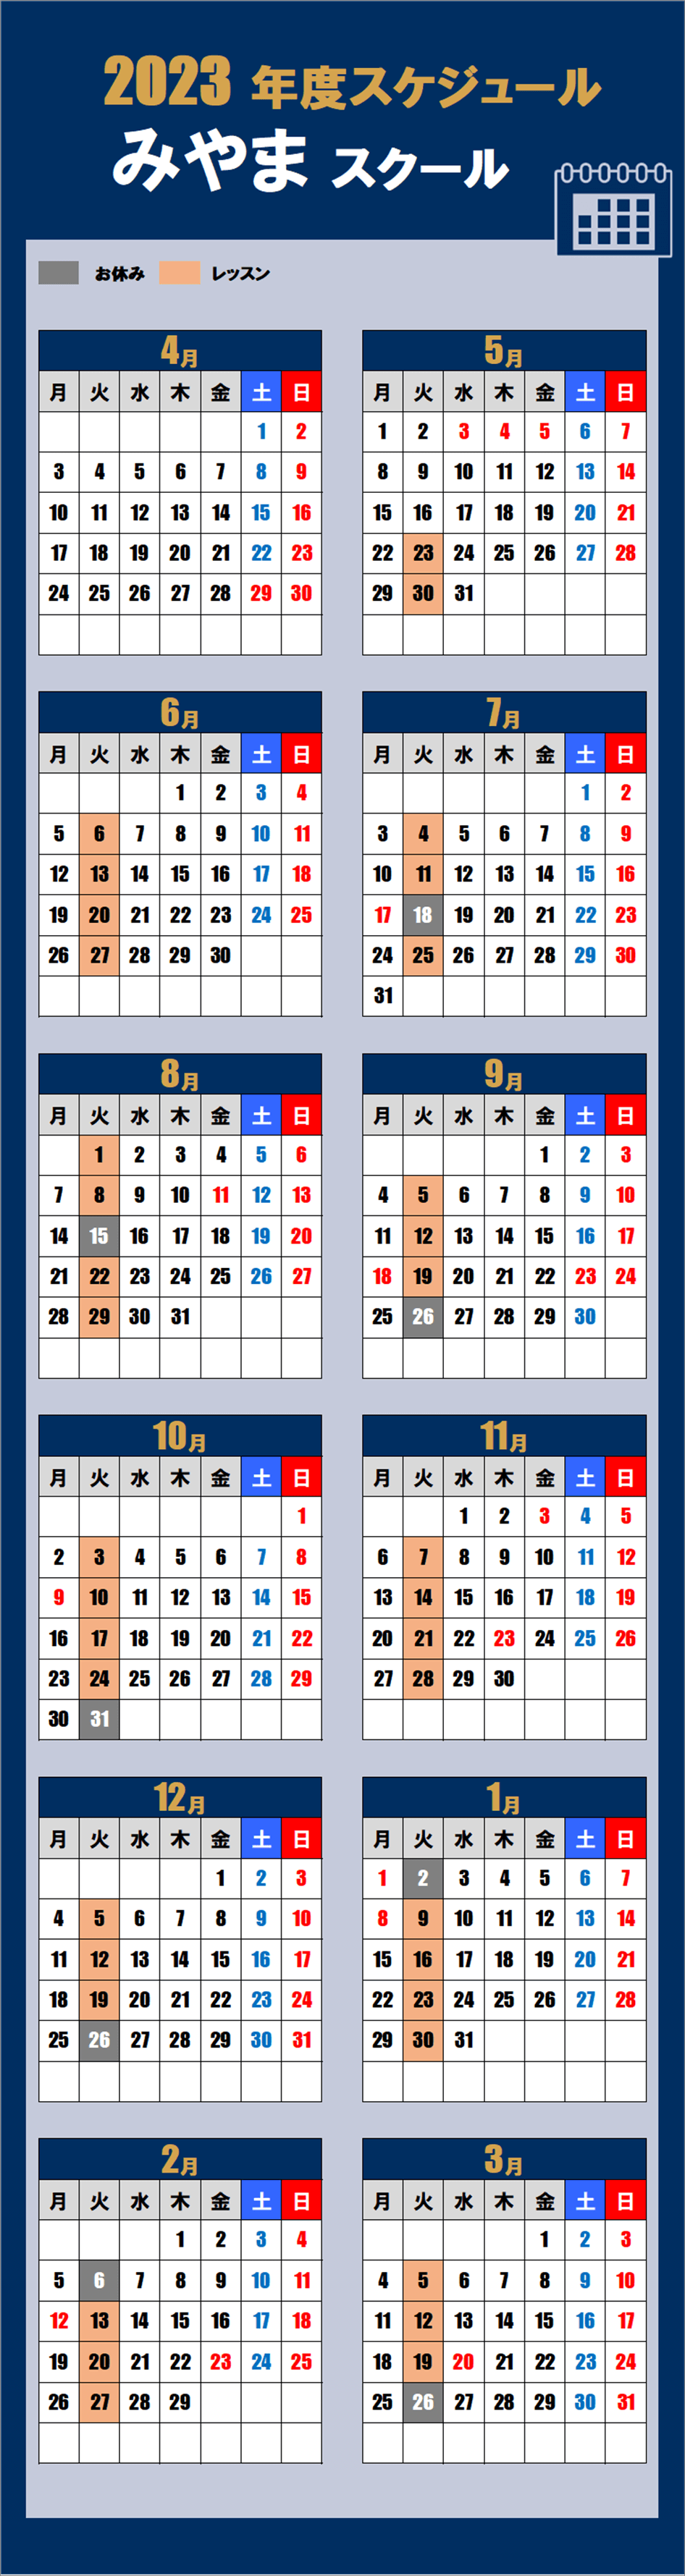 みやまスクールカレンダー